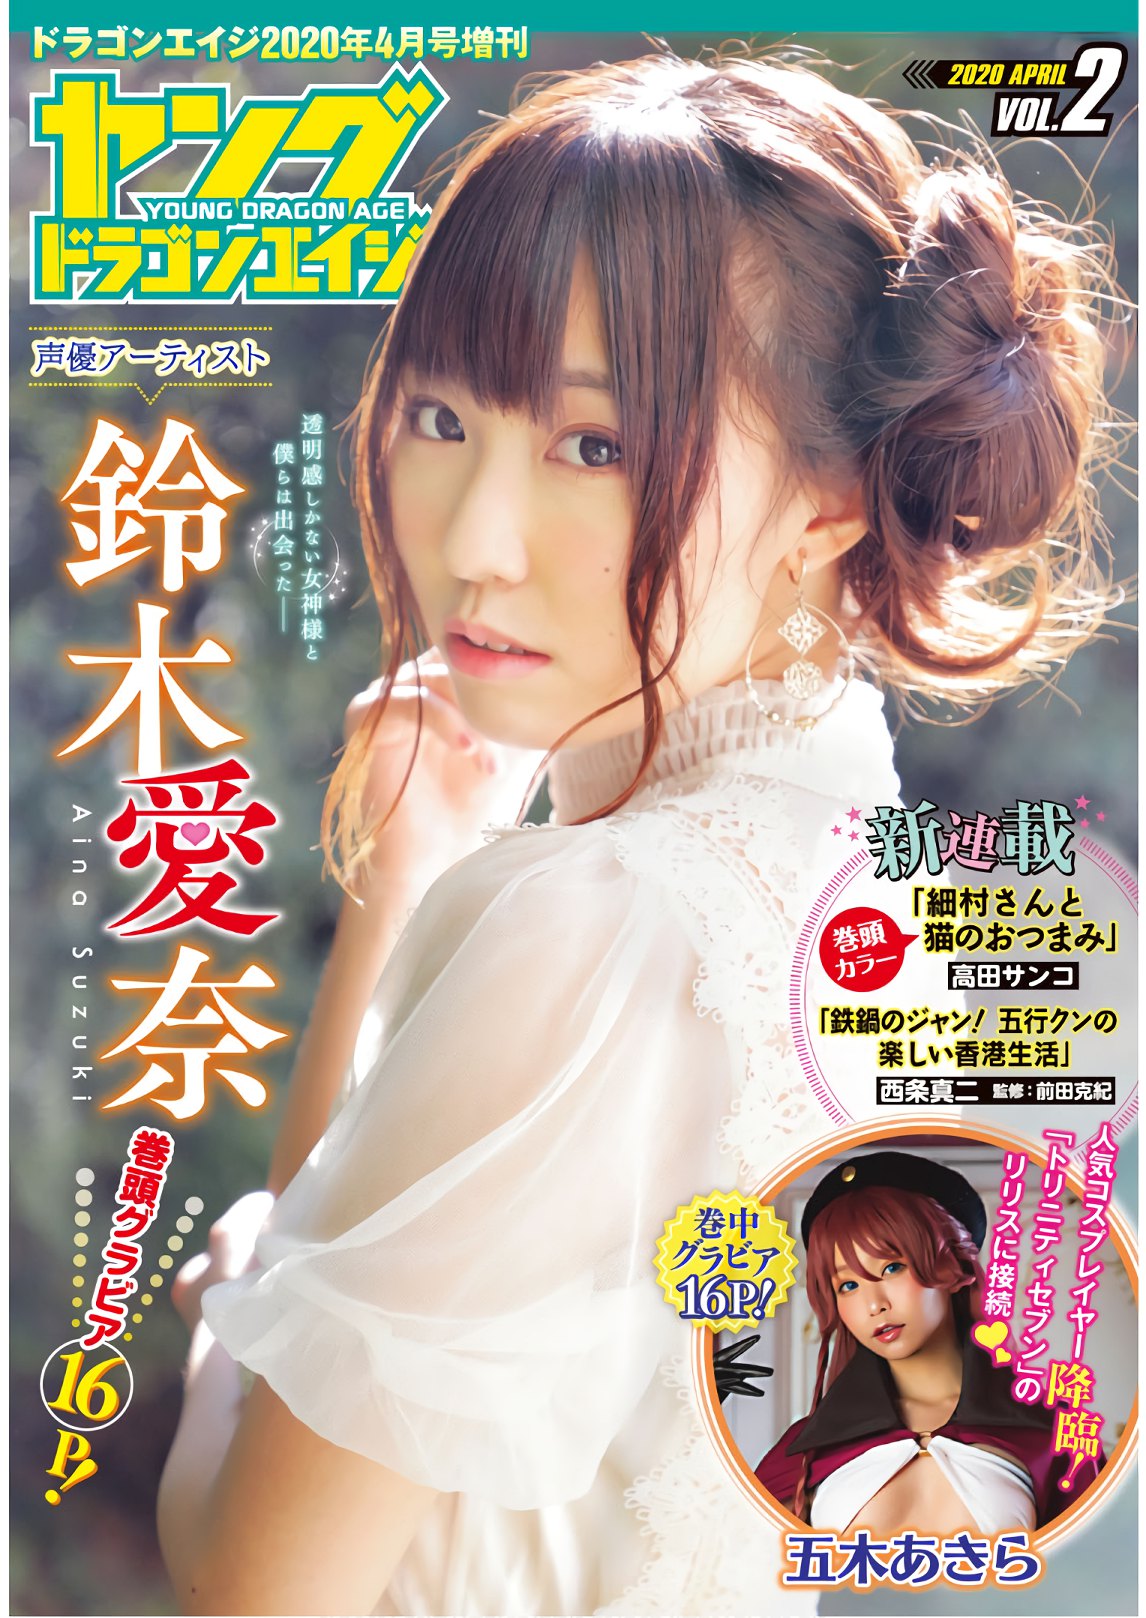 Aina Suzuki 鈴木愛奈, Dragon Age ドラゴンエイジ 2020年4月号 増刊 ヤングドラゴンエイジ Vol.02